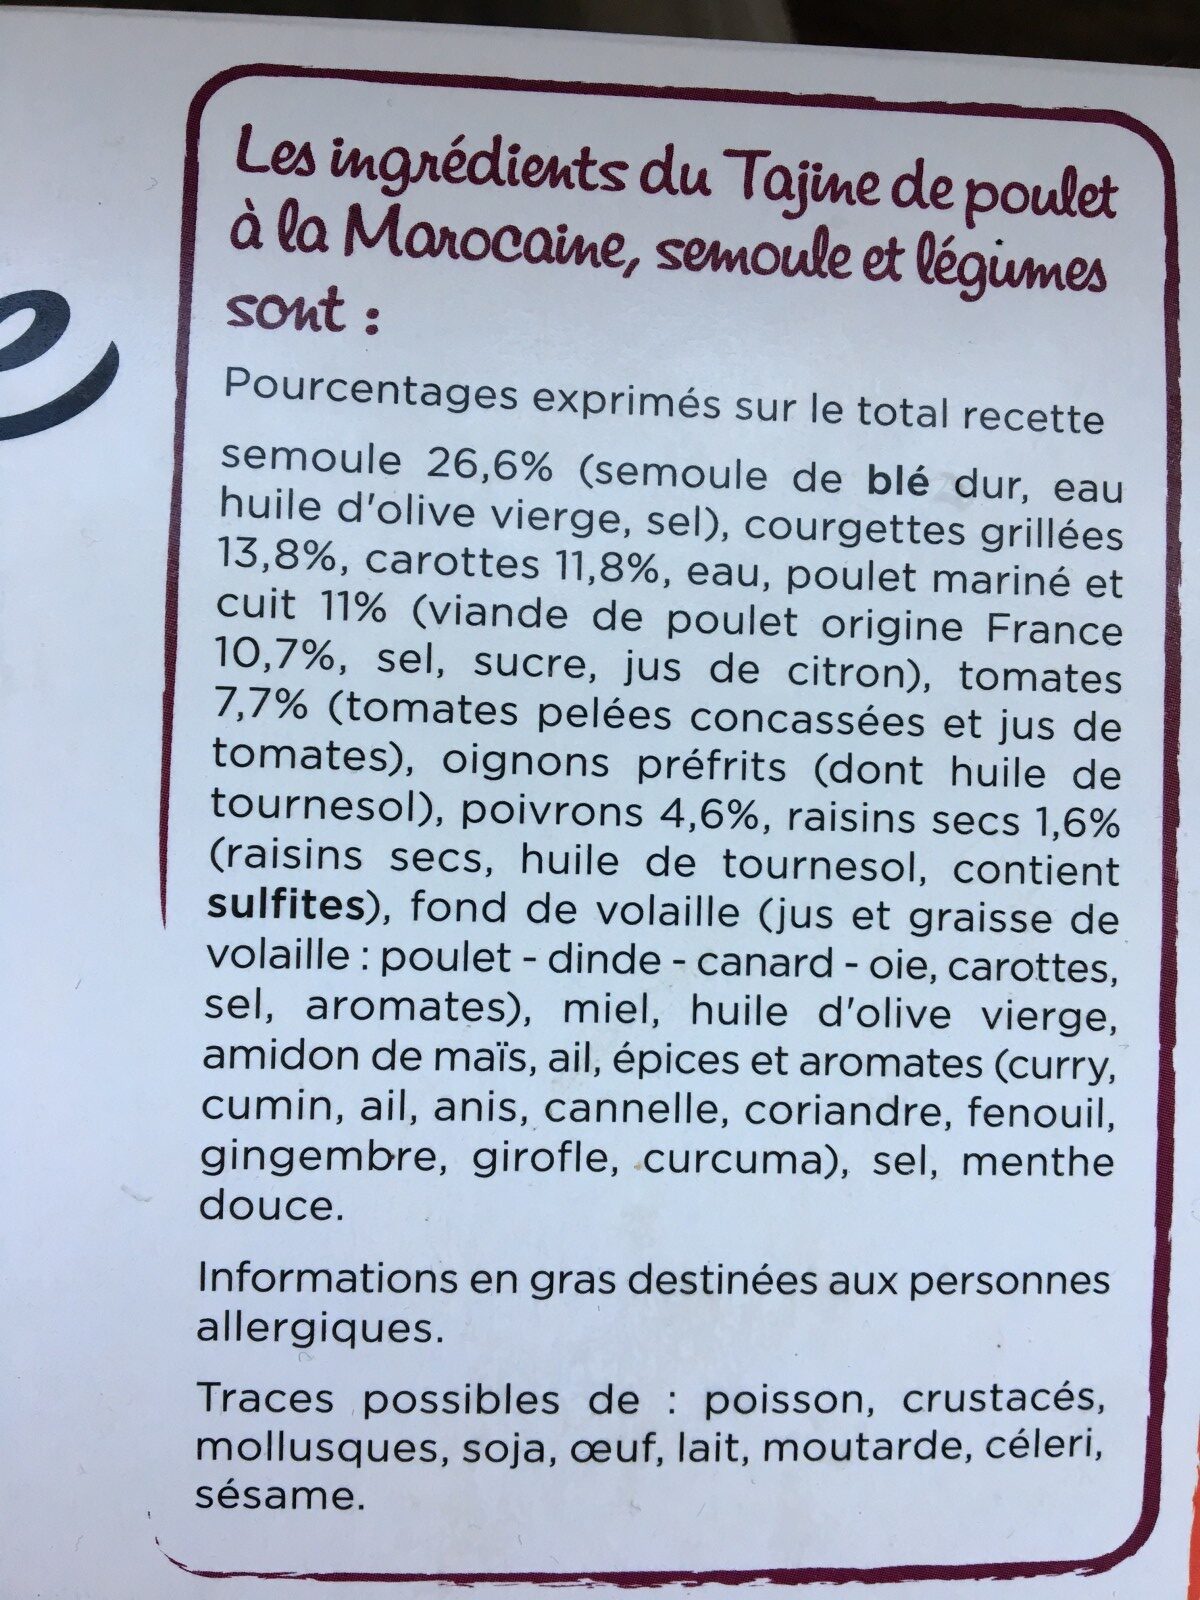 Tajine de poulet a la marocaine - Ingrédients